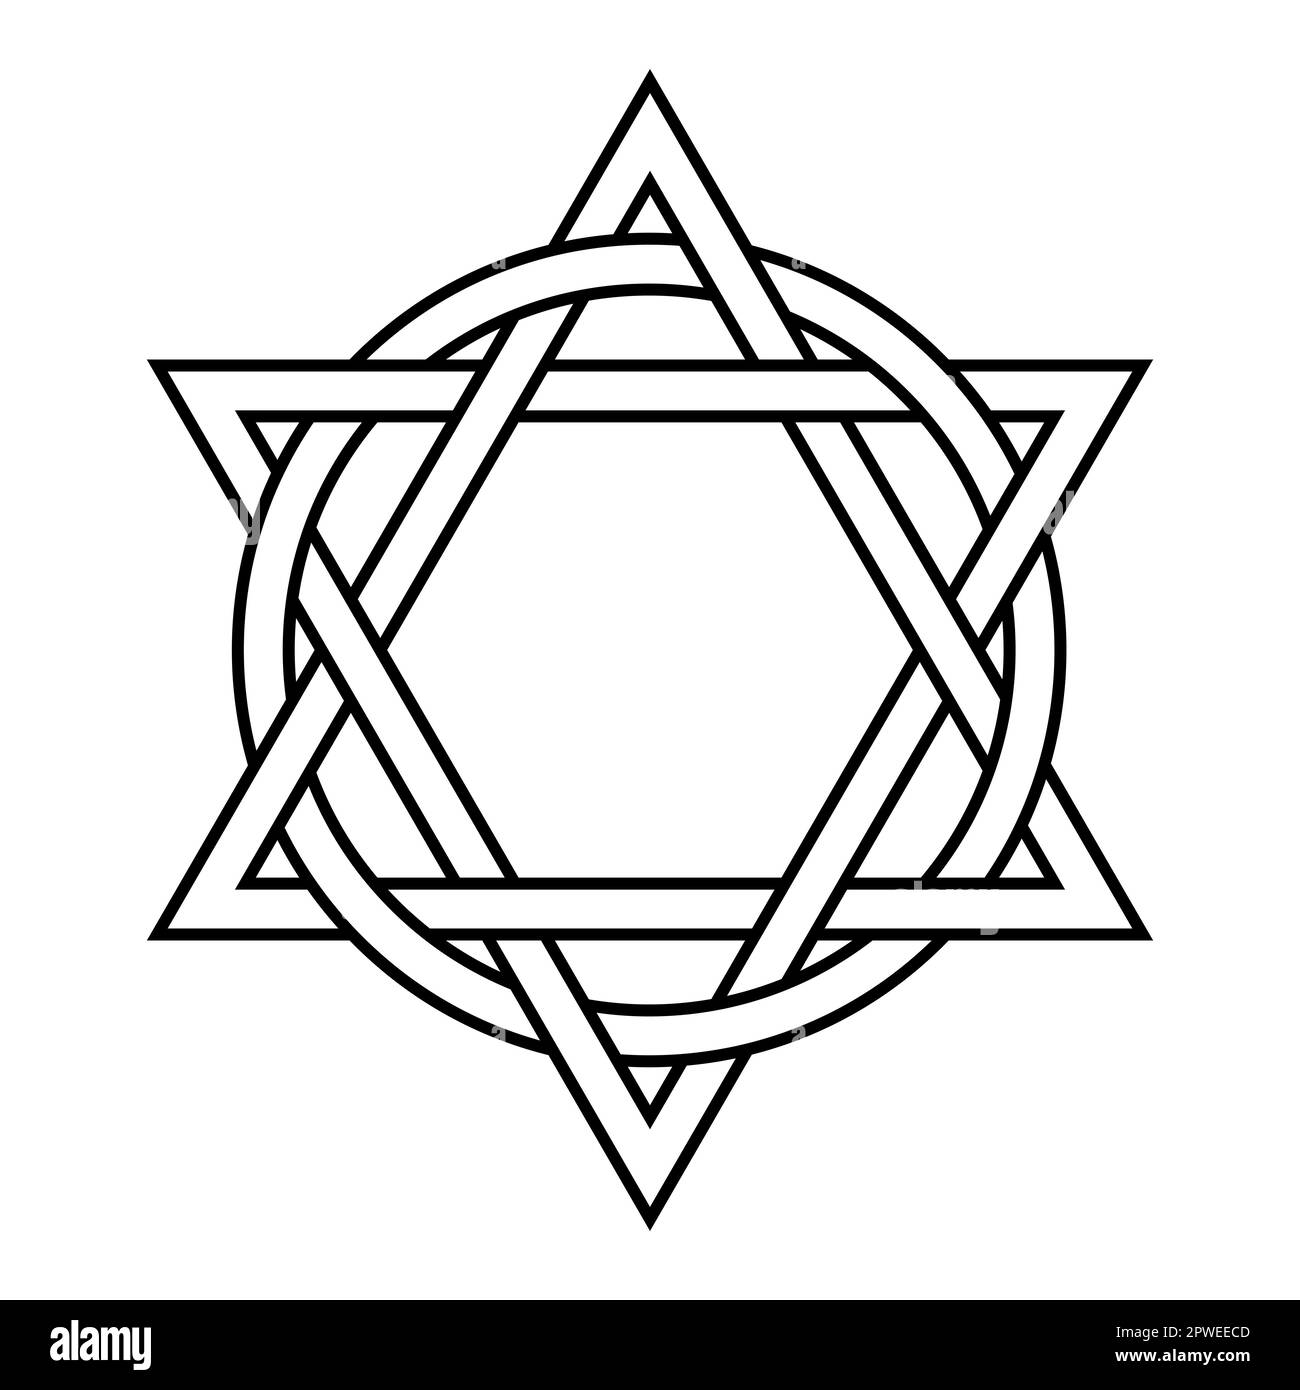 Due triangoli interlacciati con un cerchio. Antico emblema cristiano, che rappresenta l'eternità e la perfezione della Trinità. Foto Stock